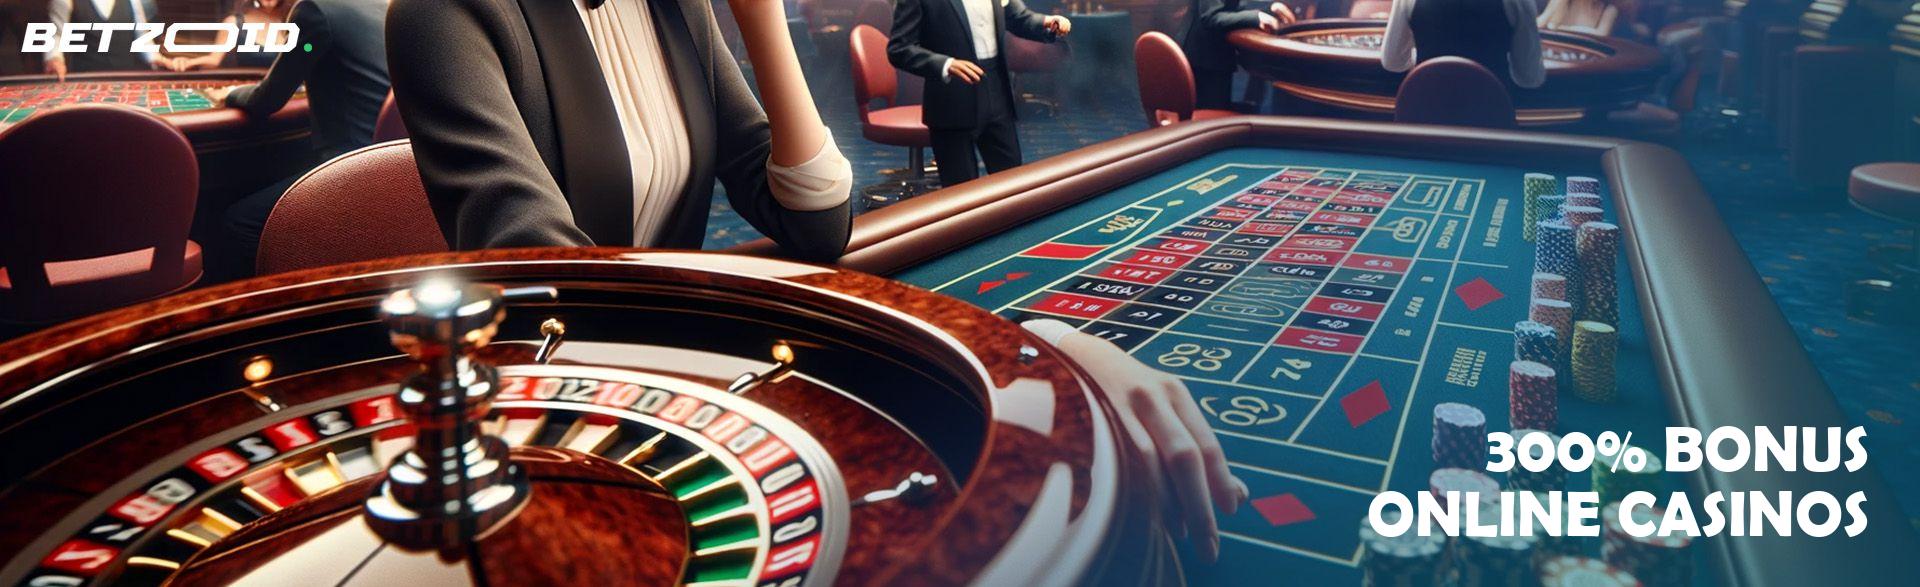 300% Bonus Online Casinos.